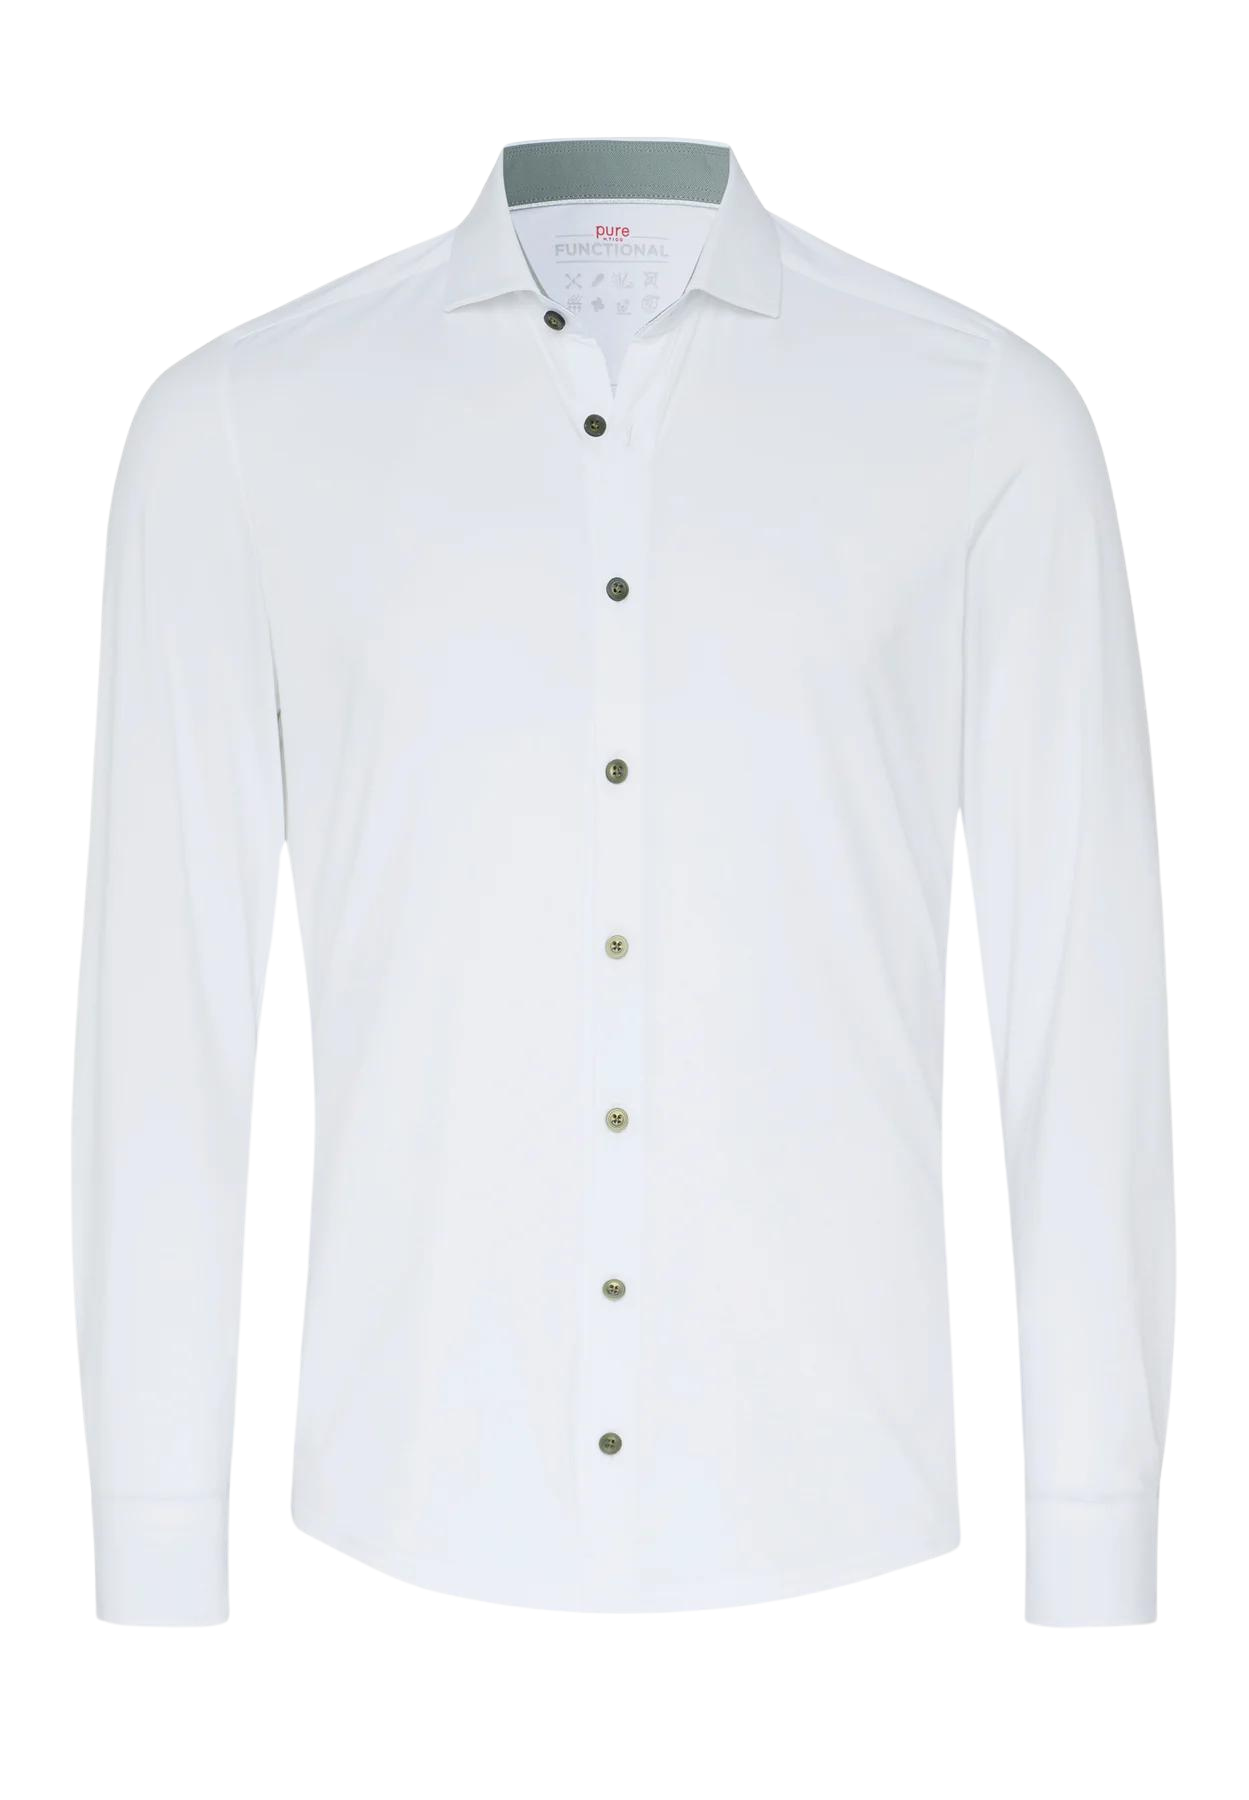 PURE valkoinen joustokauluspaita "Functional shirt"